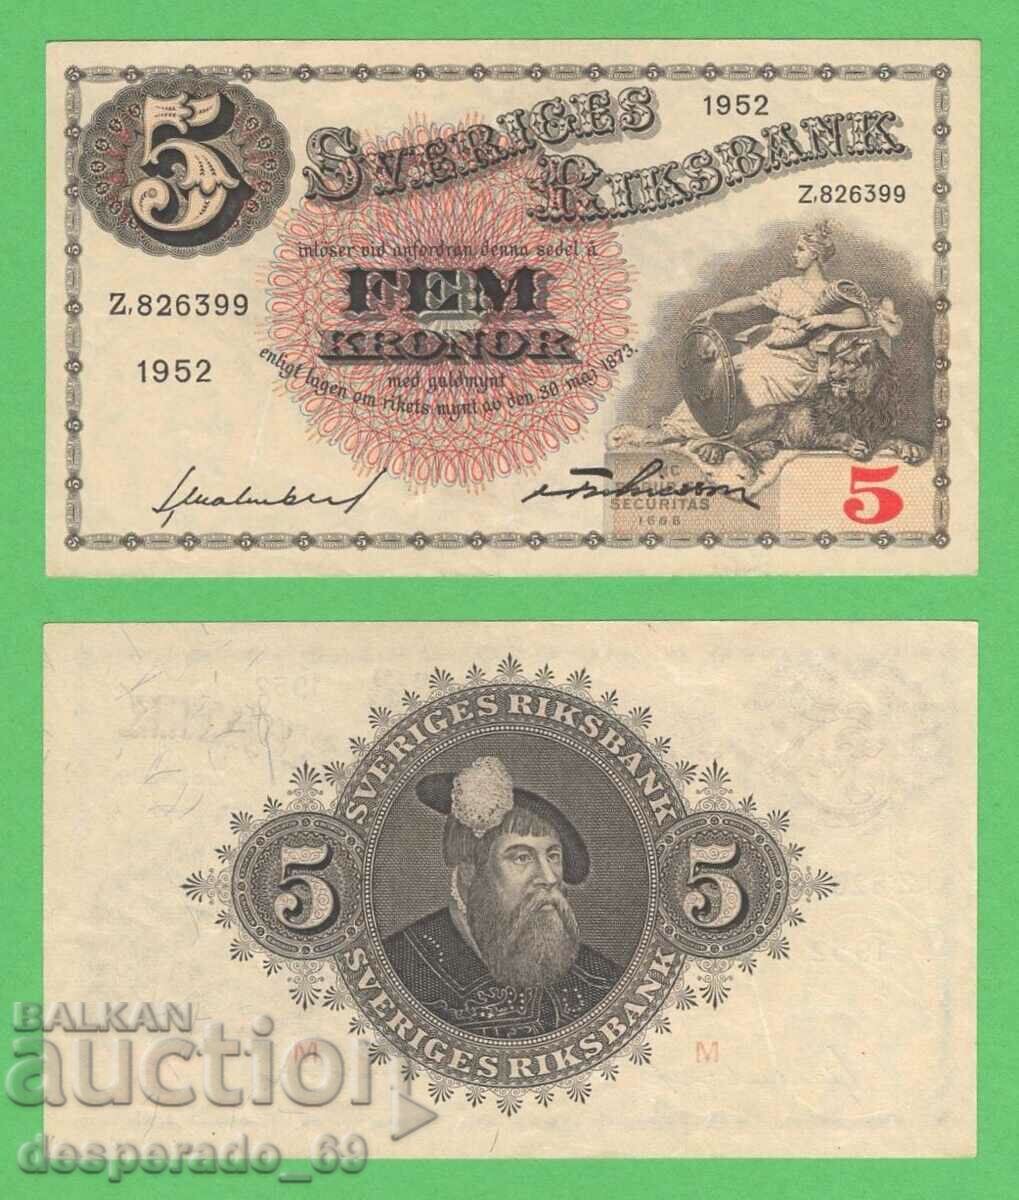 (¯`'•.¸ SWEDEN 5 kroner 1952 UNC- ¸.•'´¯)